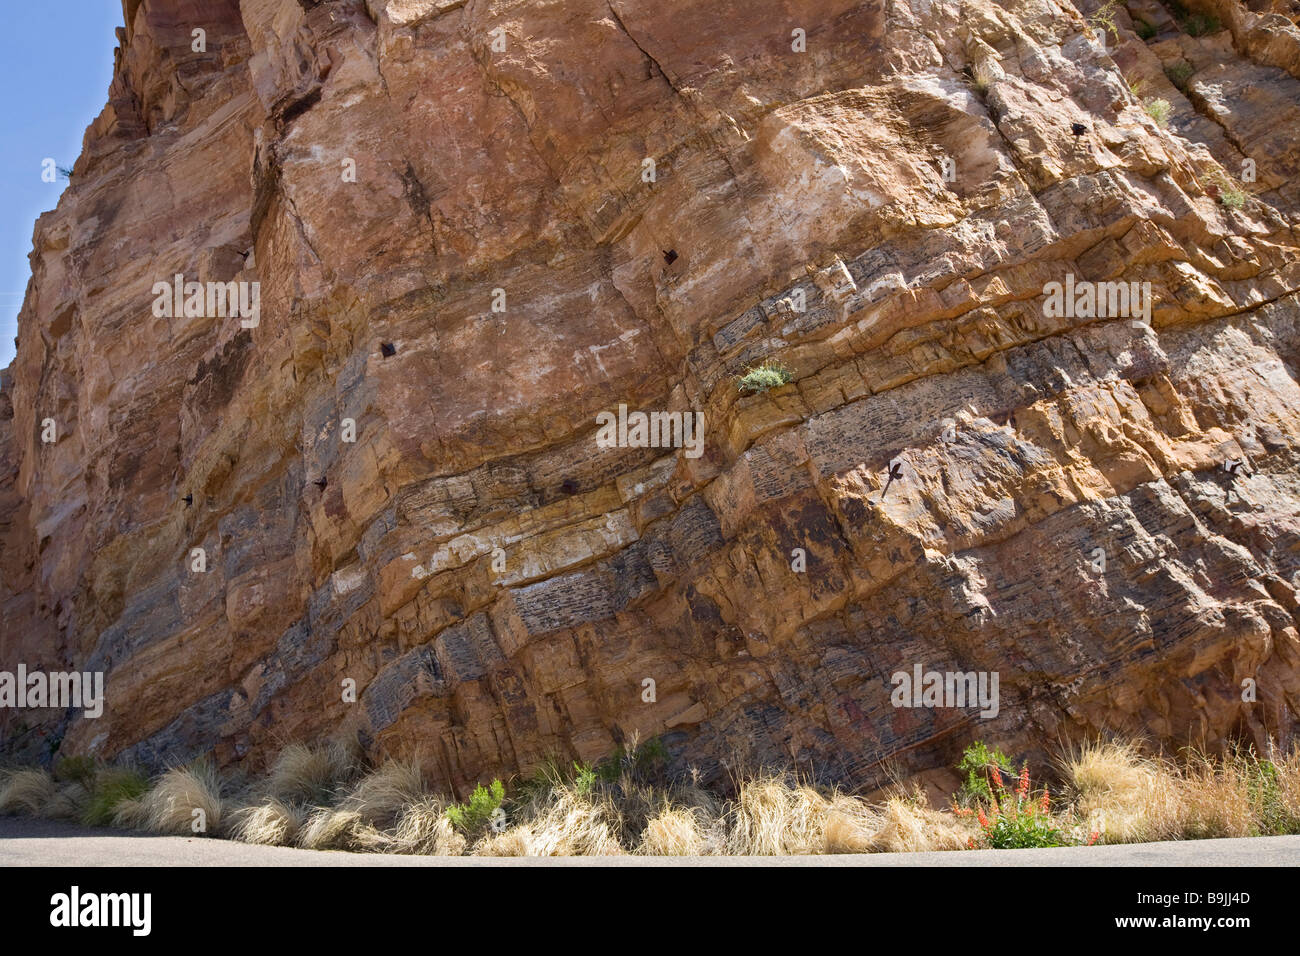 Mittleren Proterozoic Sedimentgesteine Geologie Schicht Stockfoto